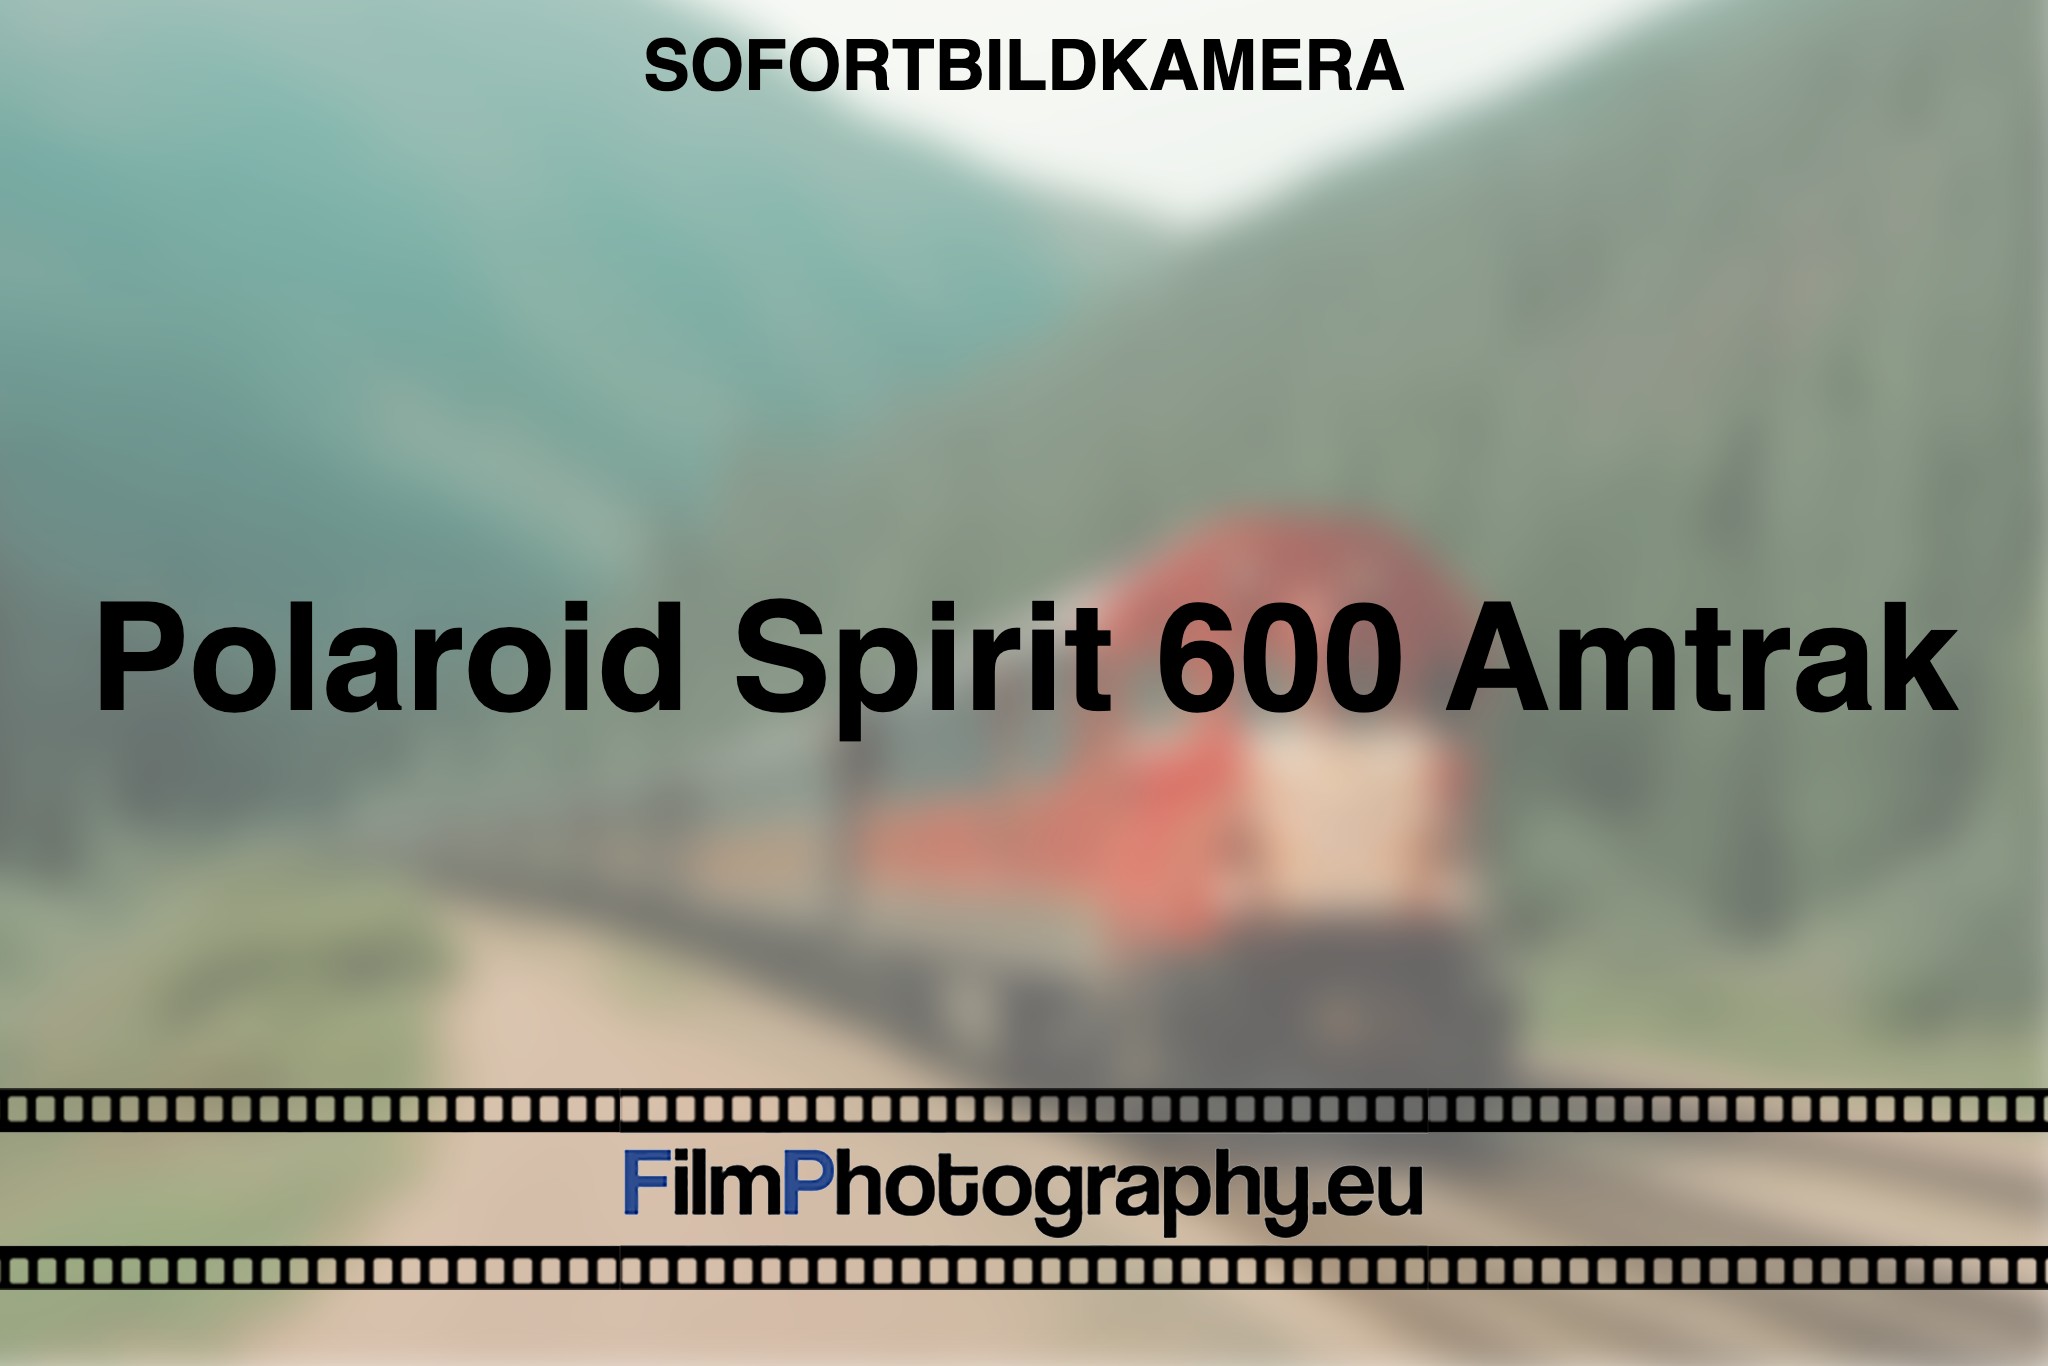 polaroid-spirit-600-amtrak-sofortbildkamera-fp-bnv